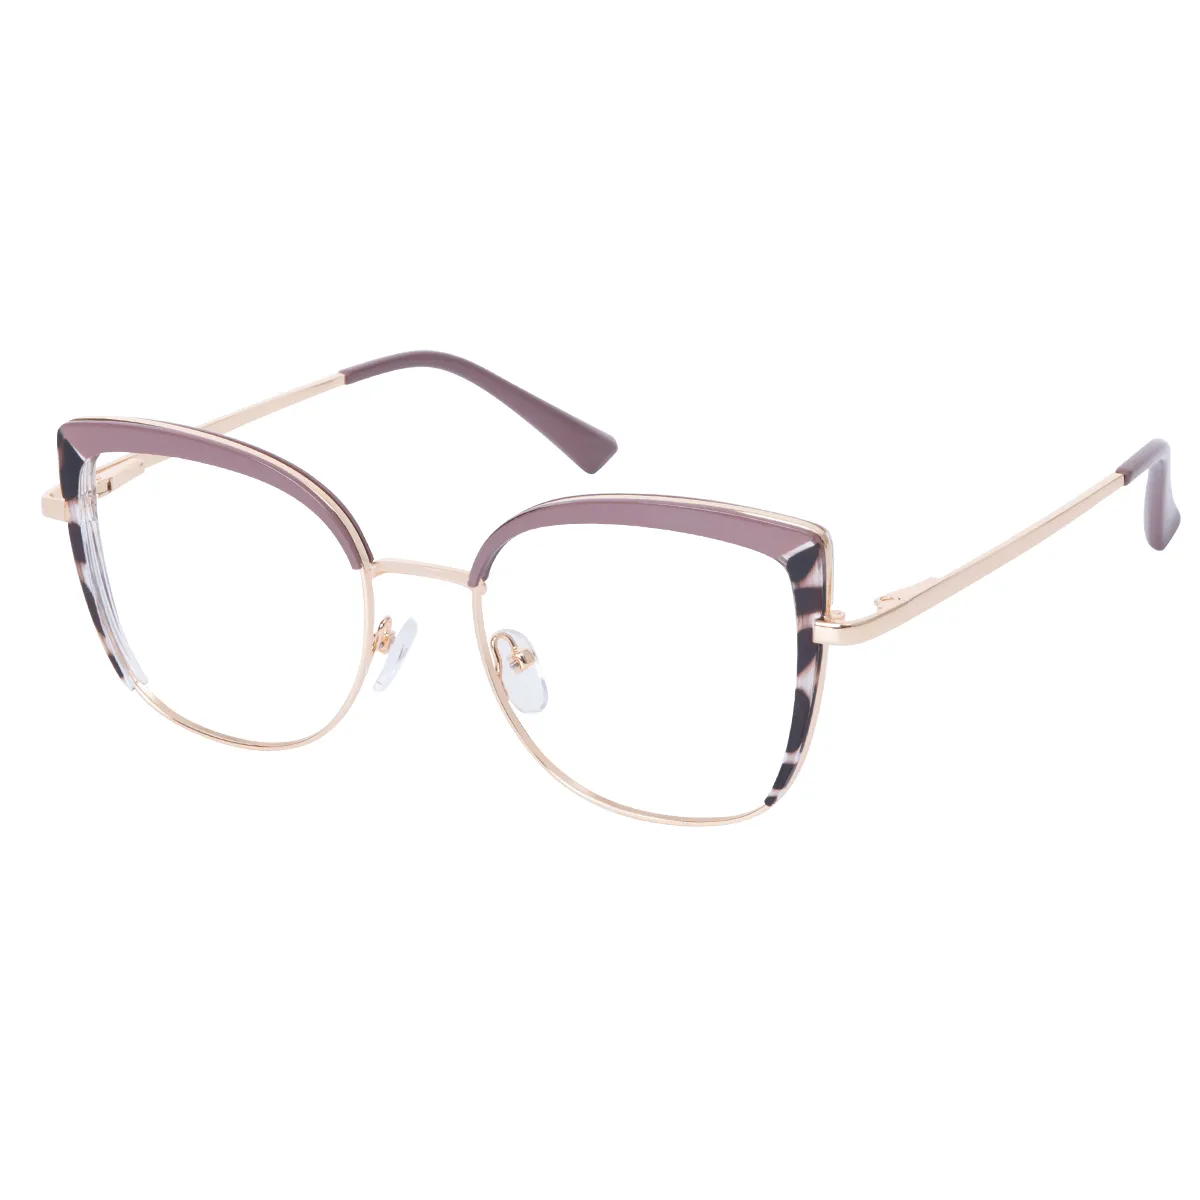 Isolde - Cat-eye Pink-Tortoiseshell Glasses for Women